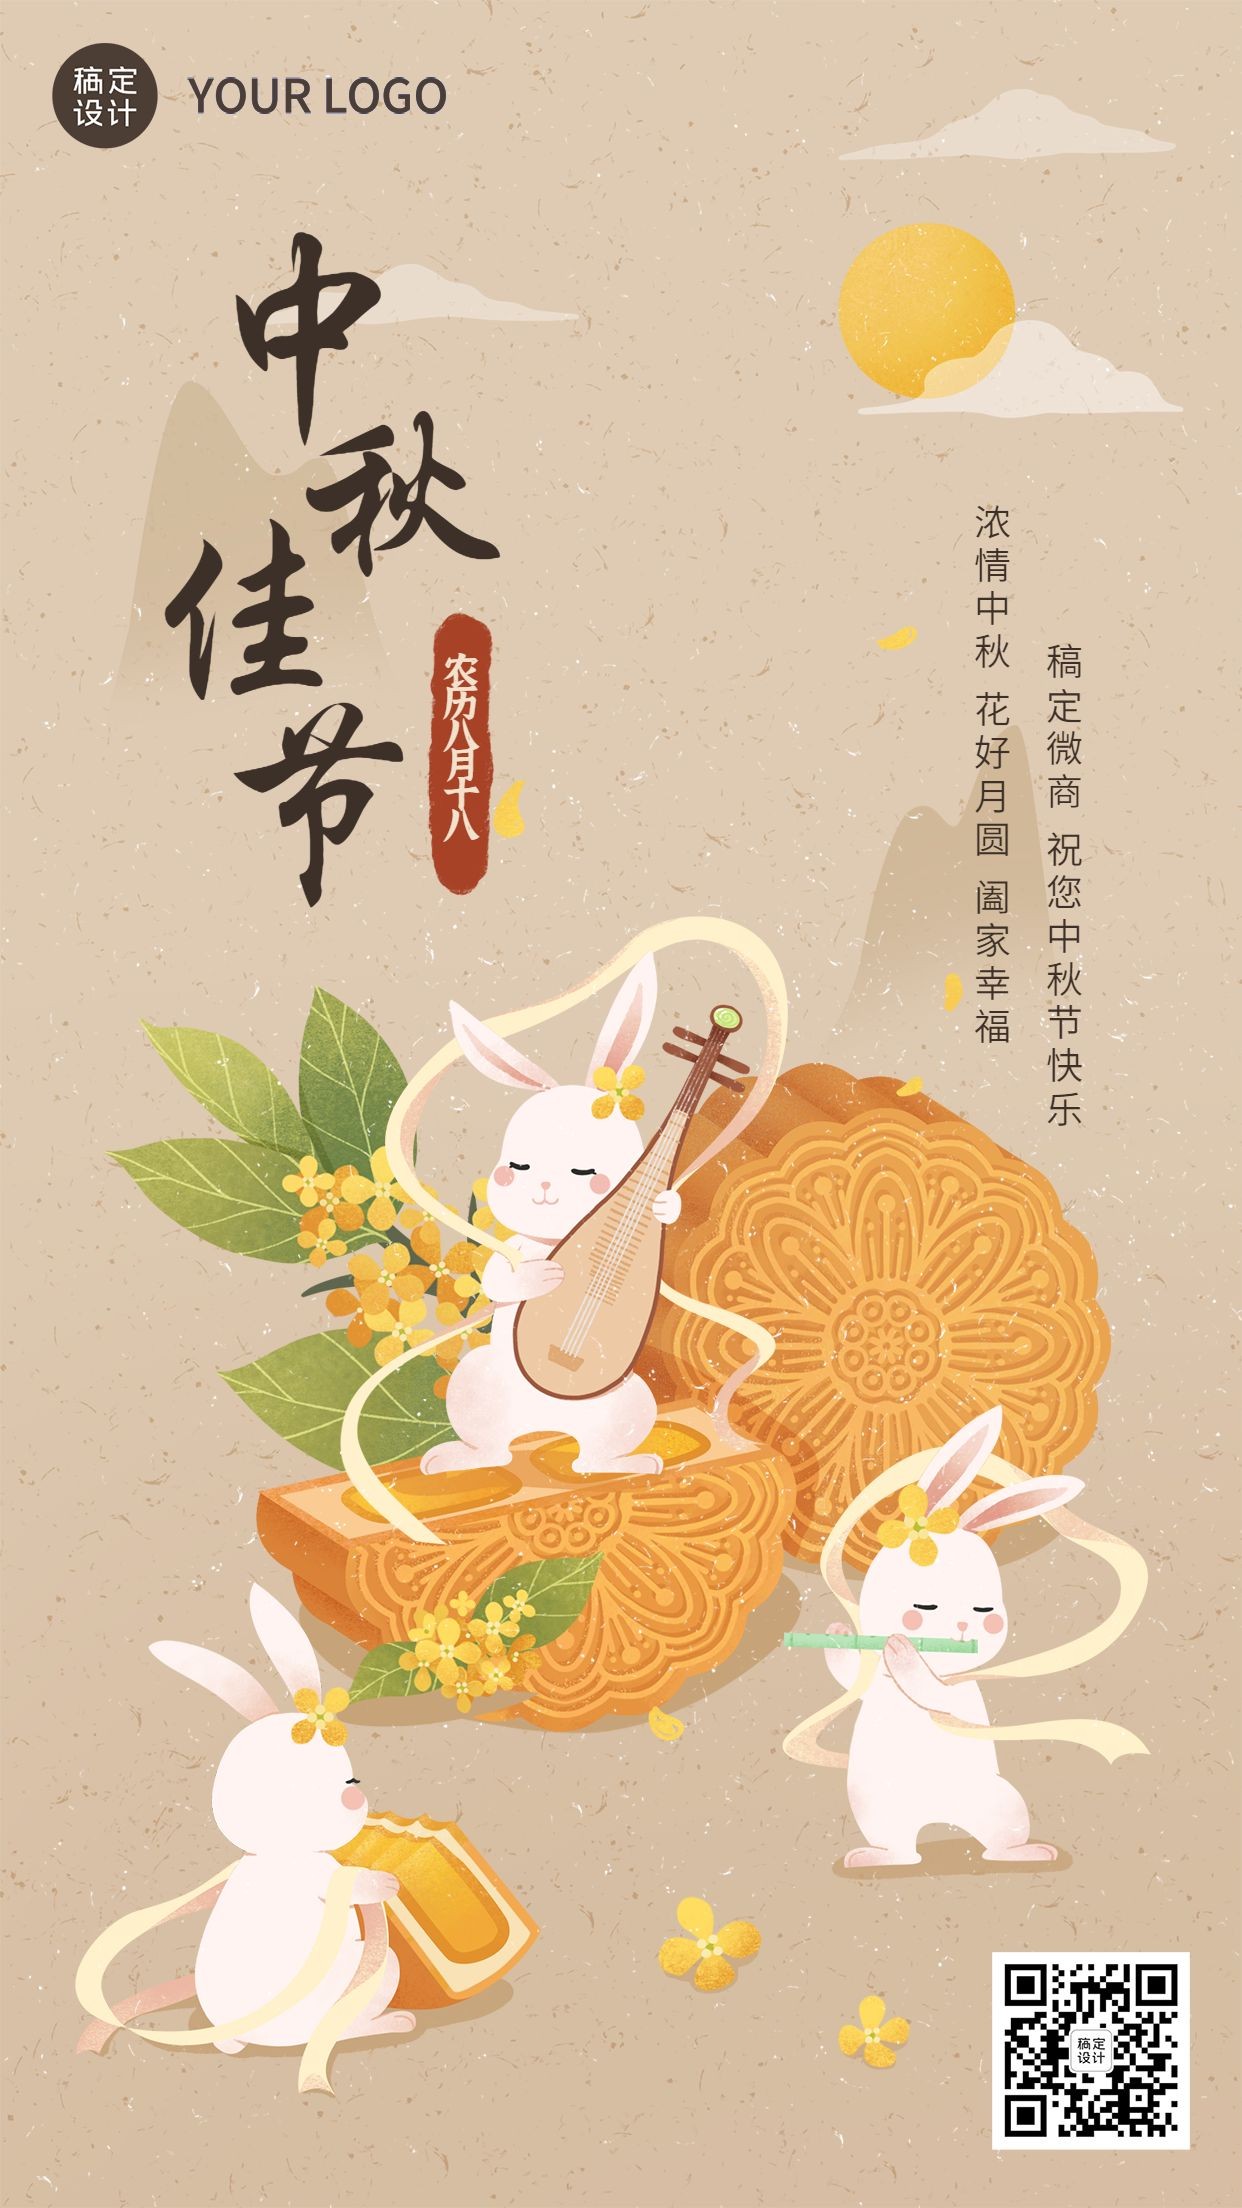 中秋节节日祝福创意插画手机海报